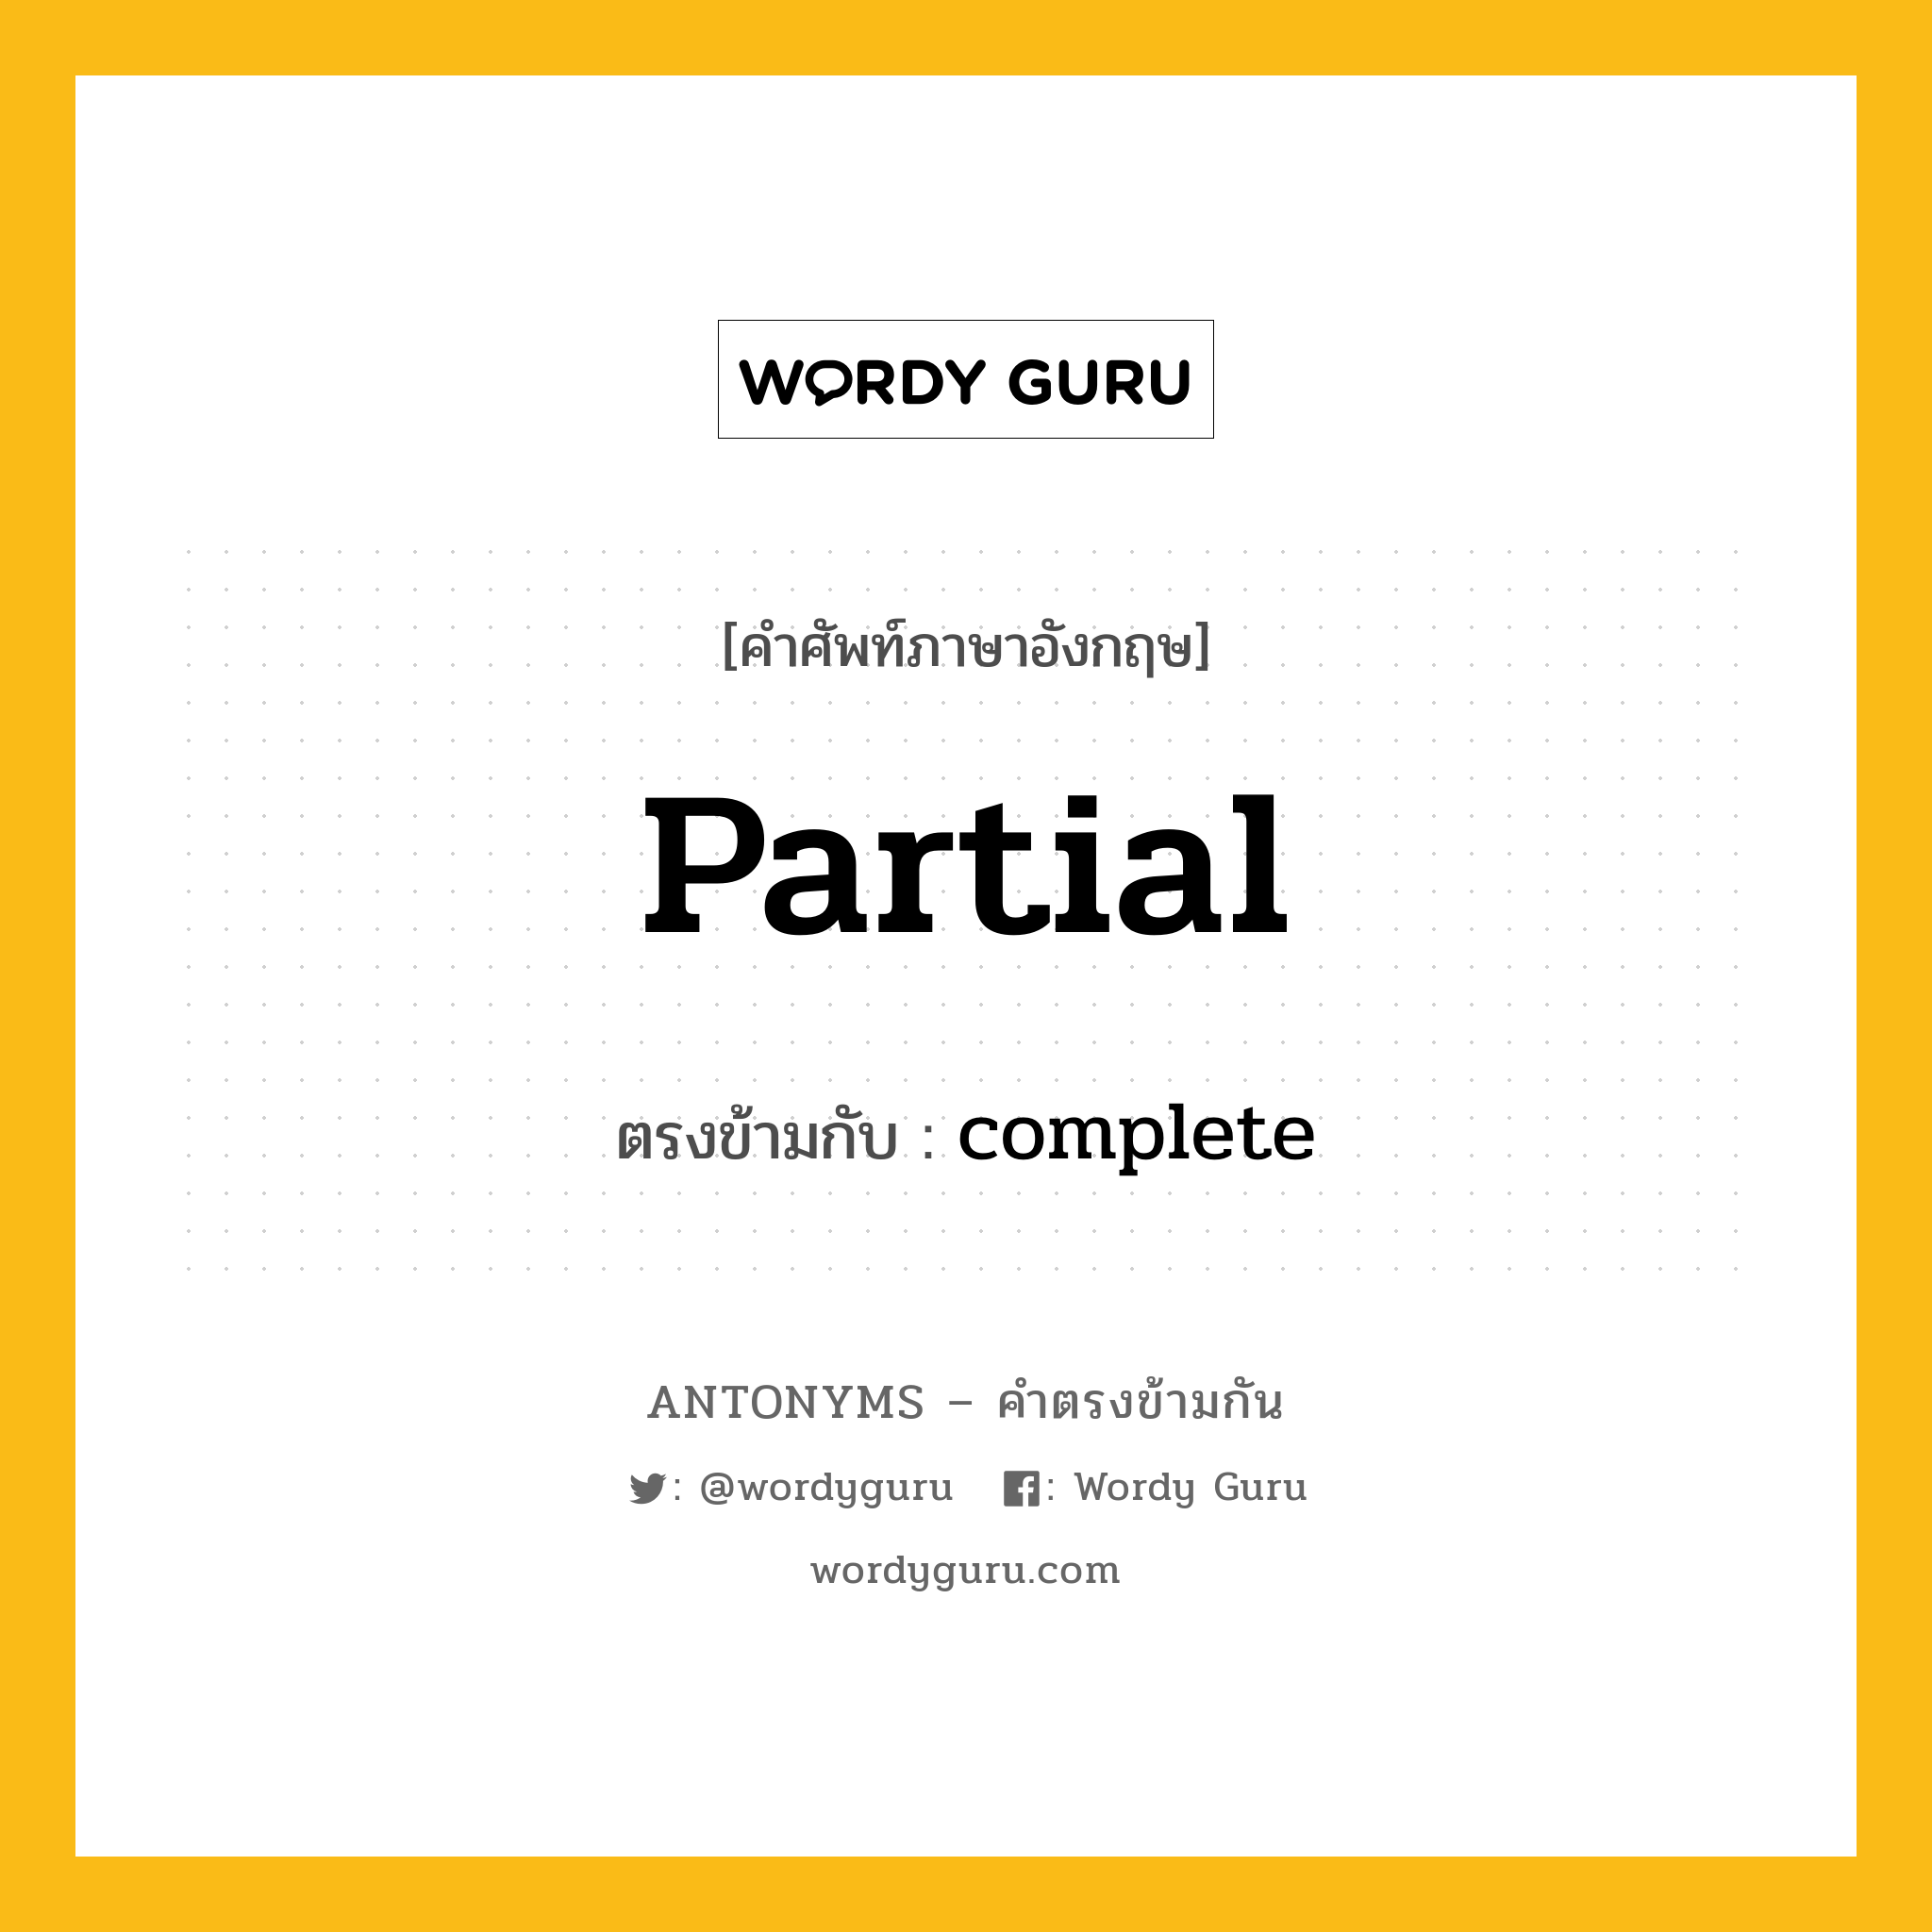 partial เป็นคำตรงข้ามกับคำไหนบ้าง?, คำศัพท์ภาษาอังกฤษ partial ตรงข้ามกับ complete หมวด complete